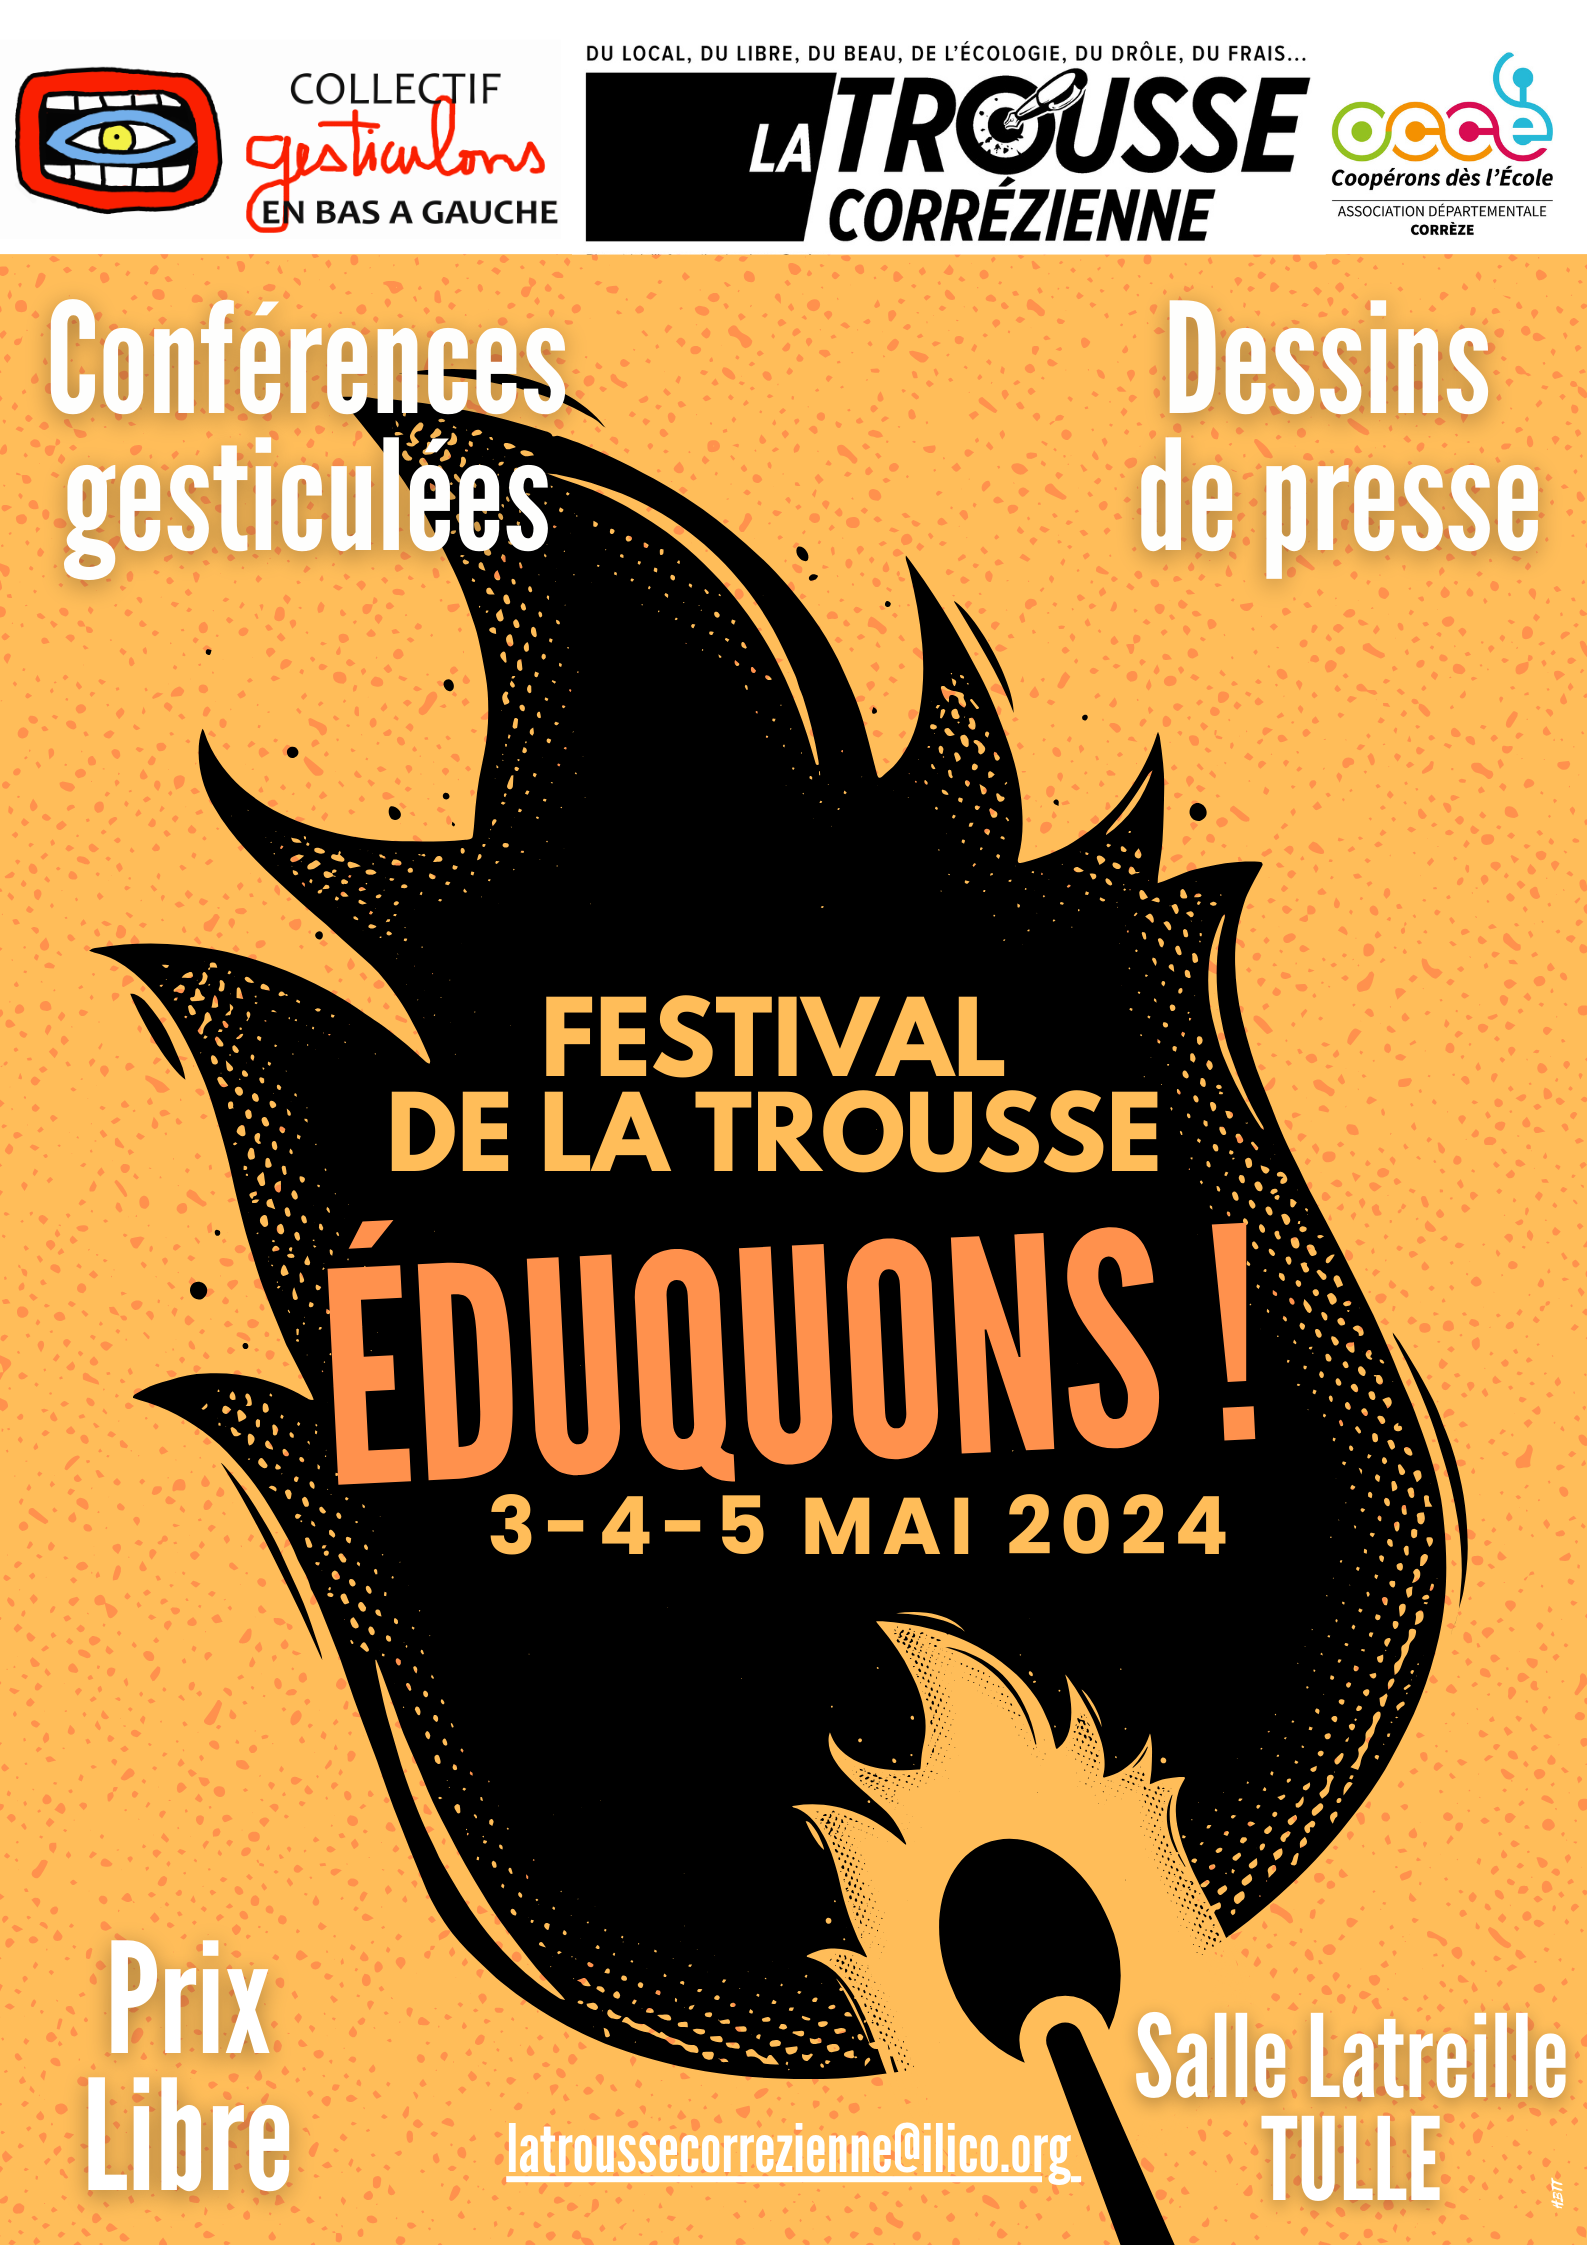 Festval de La Trousse : Eduquons Le 5 mai 2024